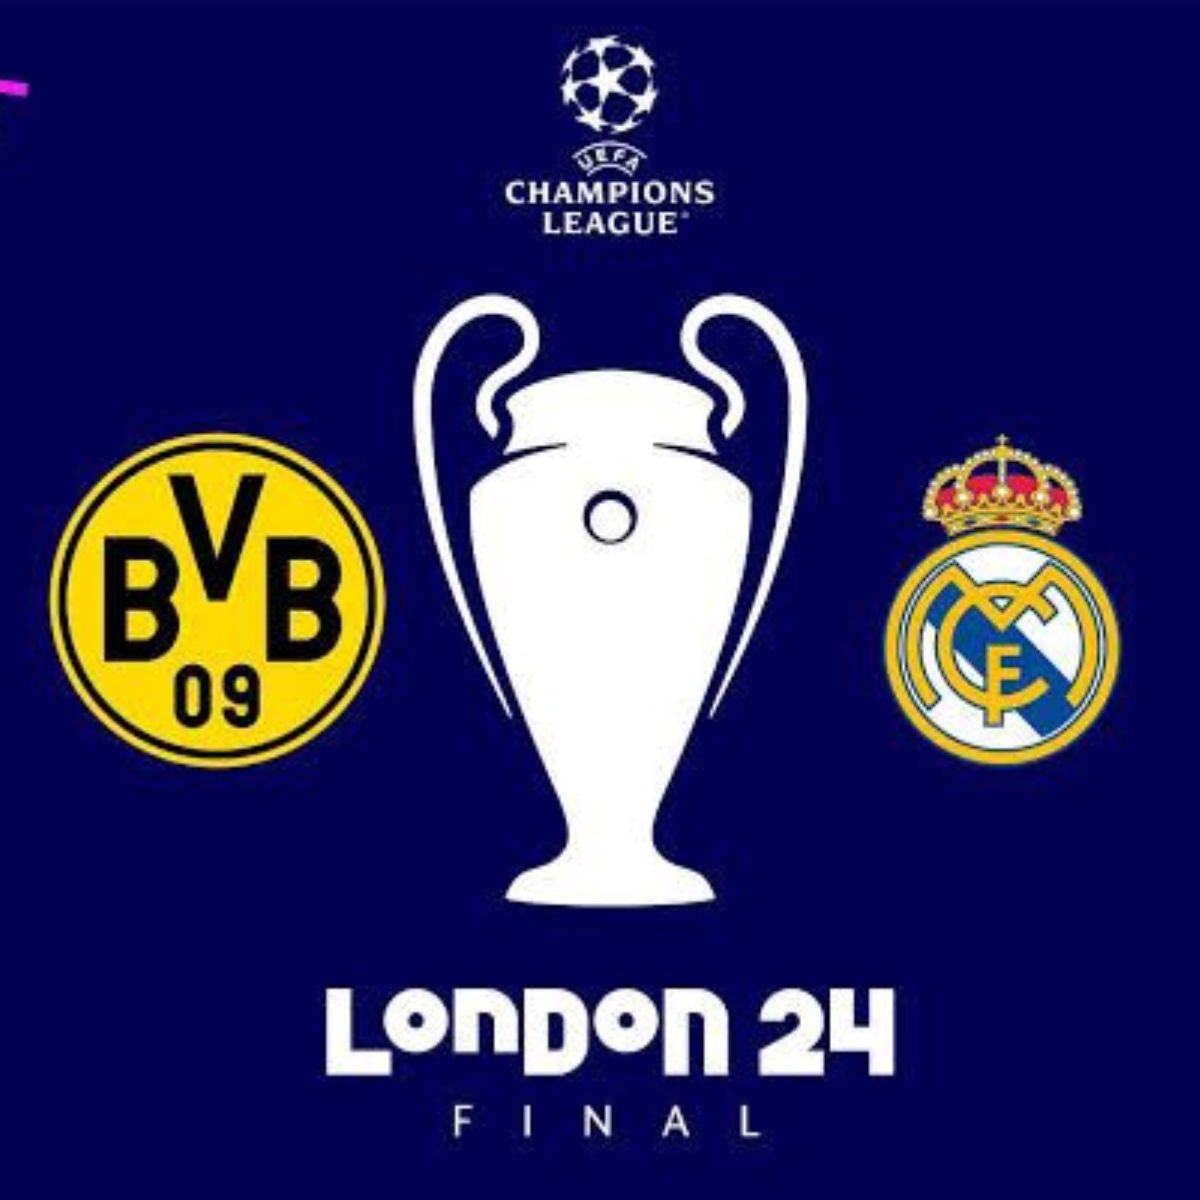  Arte da final da UEFA Champions League, com escudos de Borussia Dortmund e Real Madrid. 